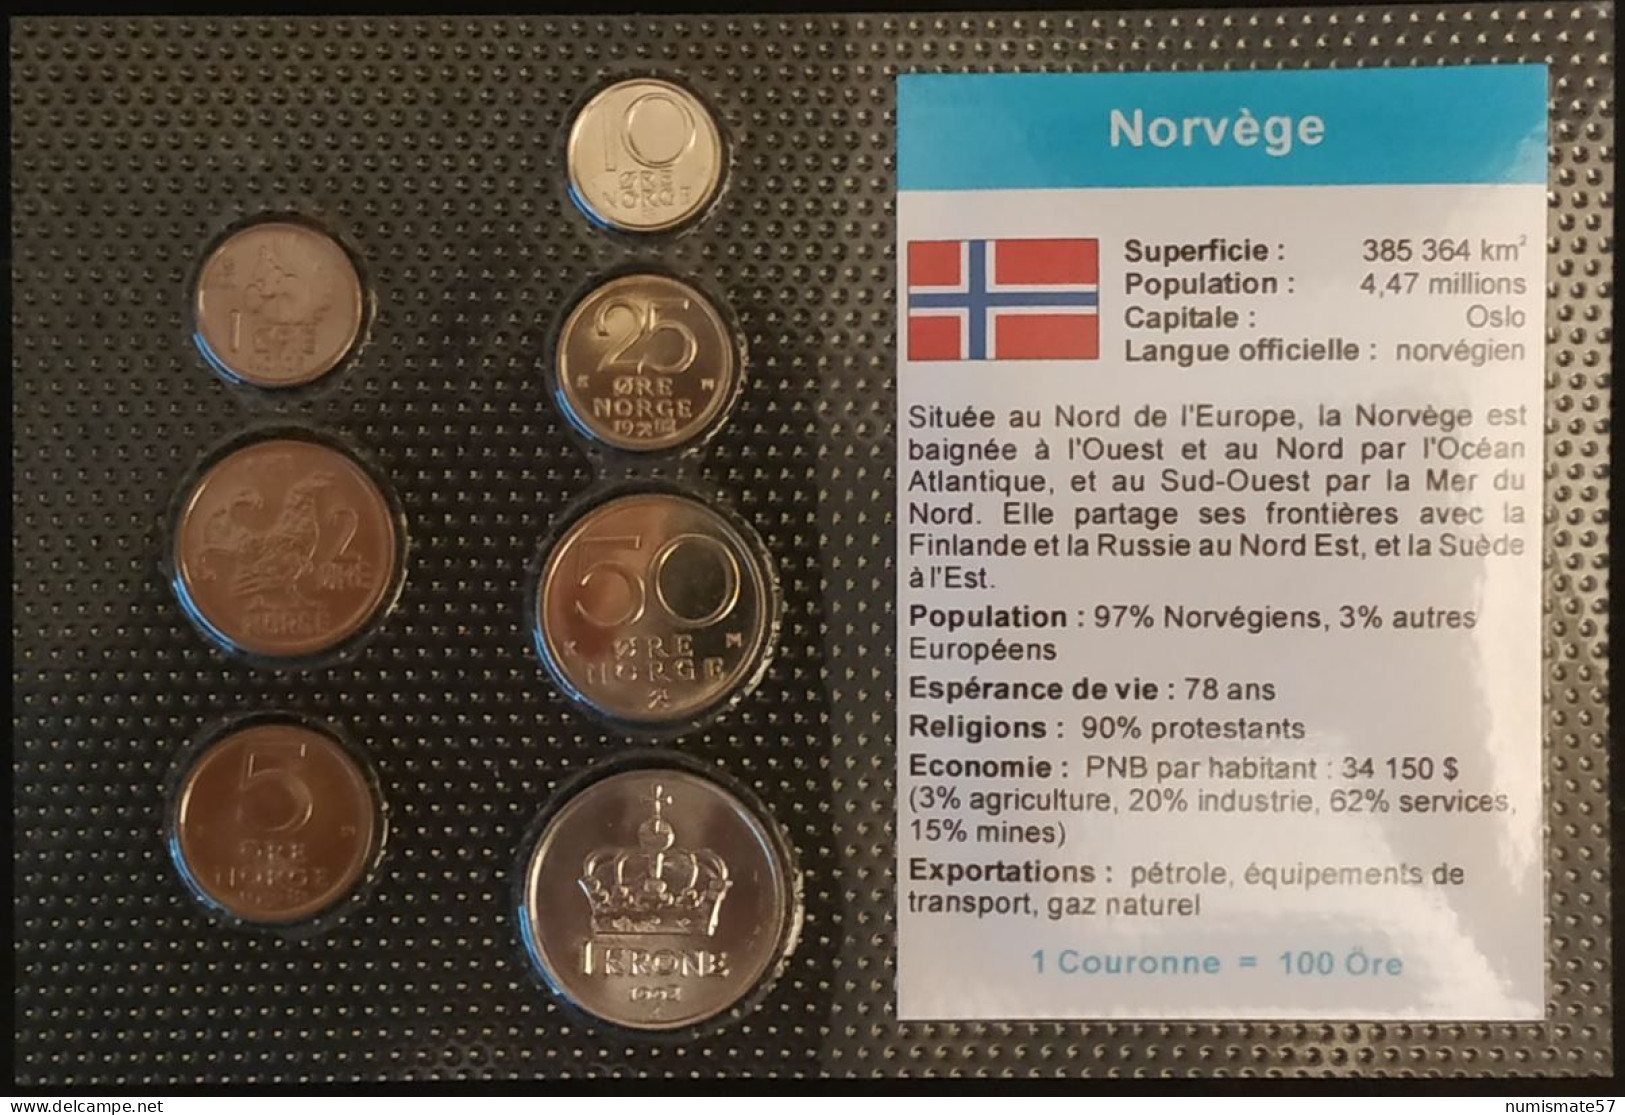 NORVEGE - NORWAY - SERIE DE 7 PIECES DIFFERENTES - 1 - 2 - 5 - 10 - 25 - 50 - ORE - 1 KRONE - Norwegen